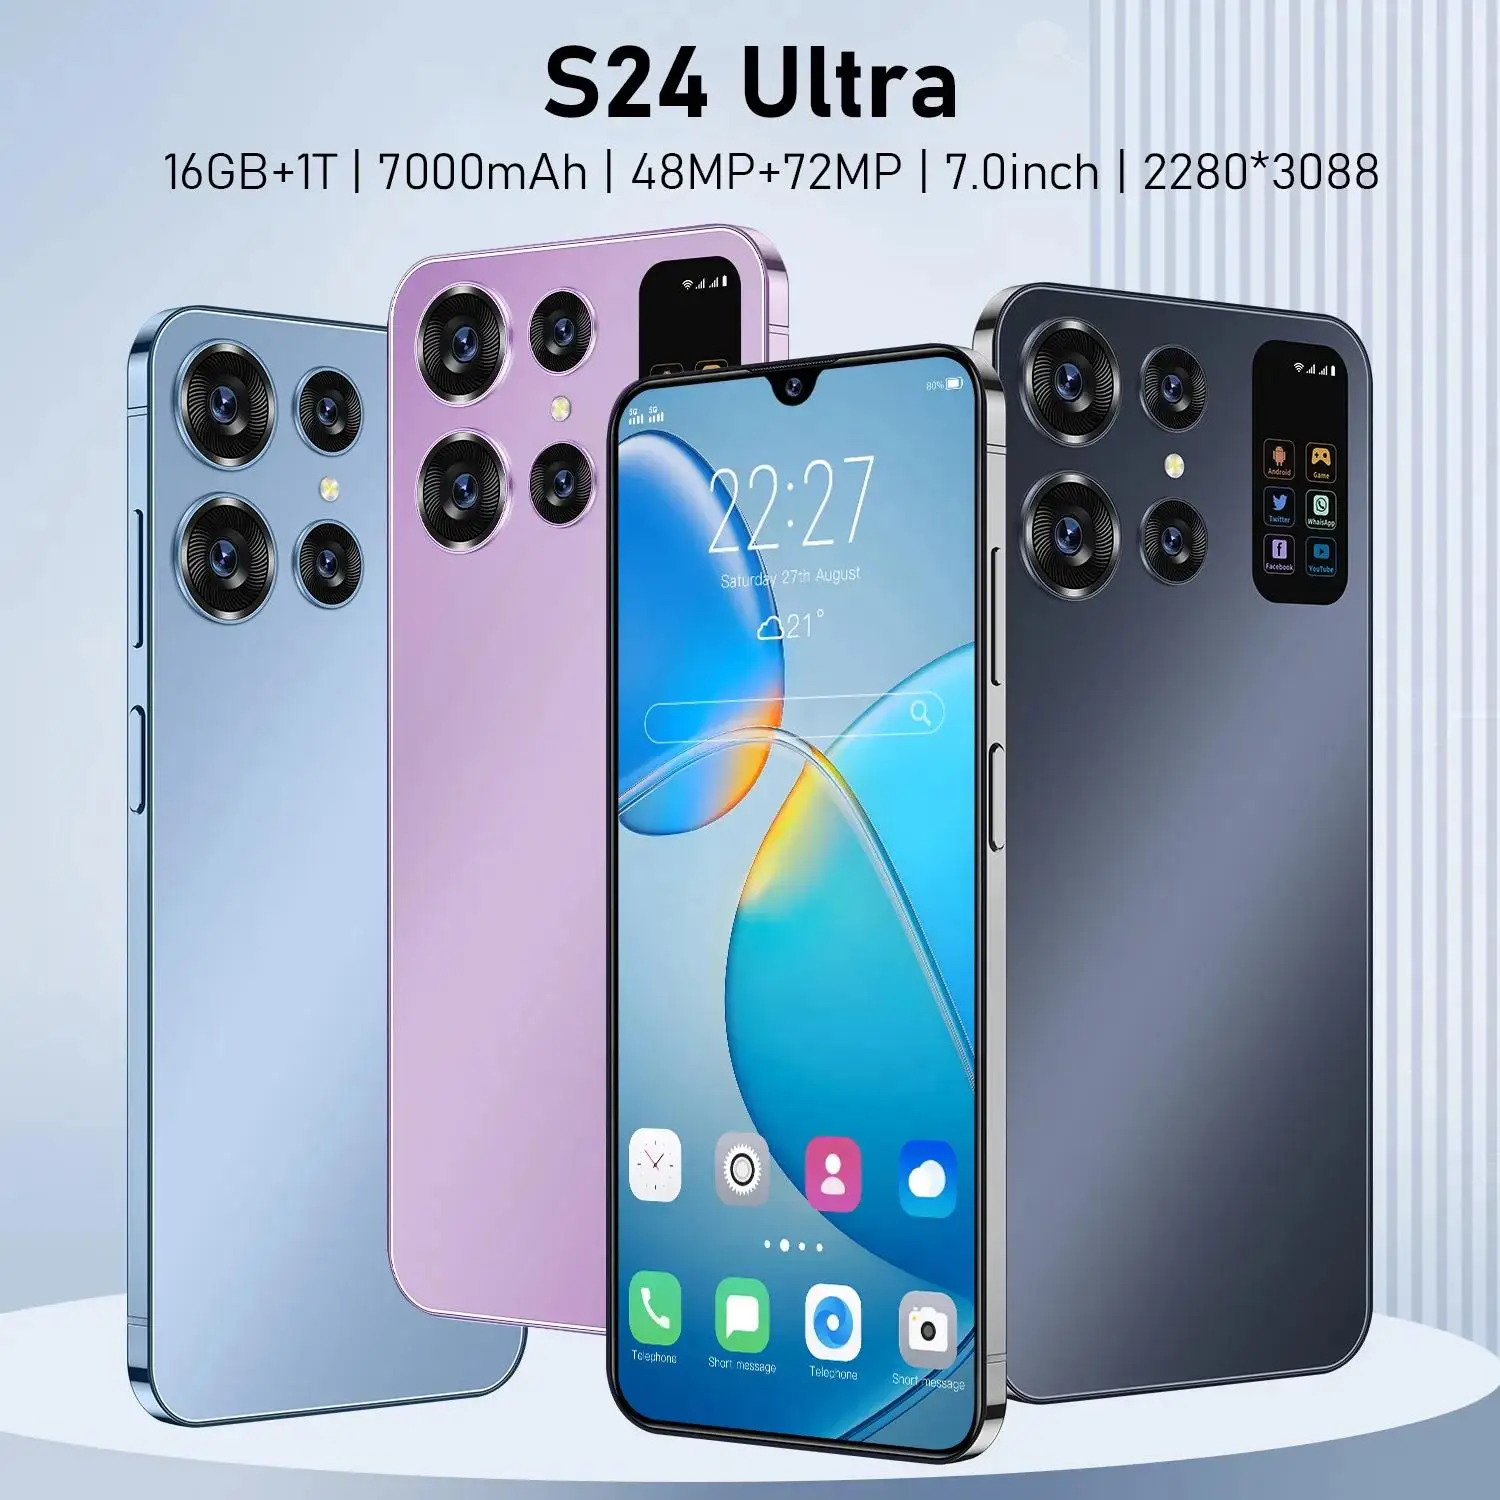 

Смартфон S24 Ultra, 7,0 дюйма, Оригинальный разблокированный телефон, 16 ГБ + 1 ТБ, 4G, две SIM-карты, телефон